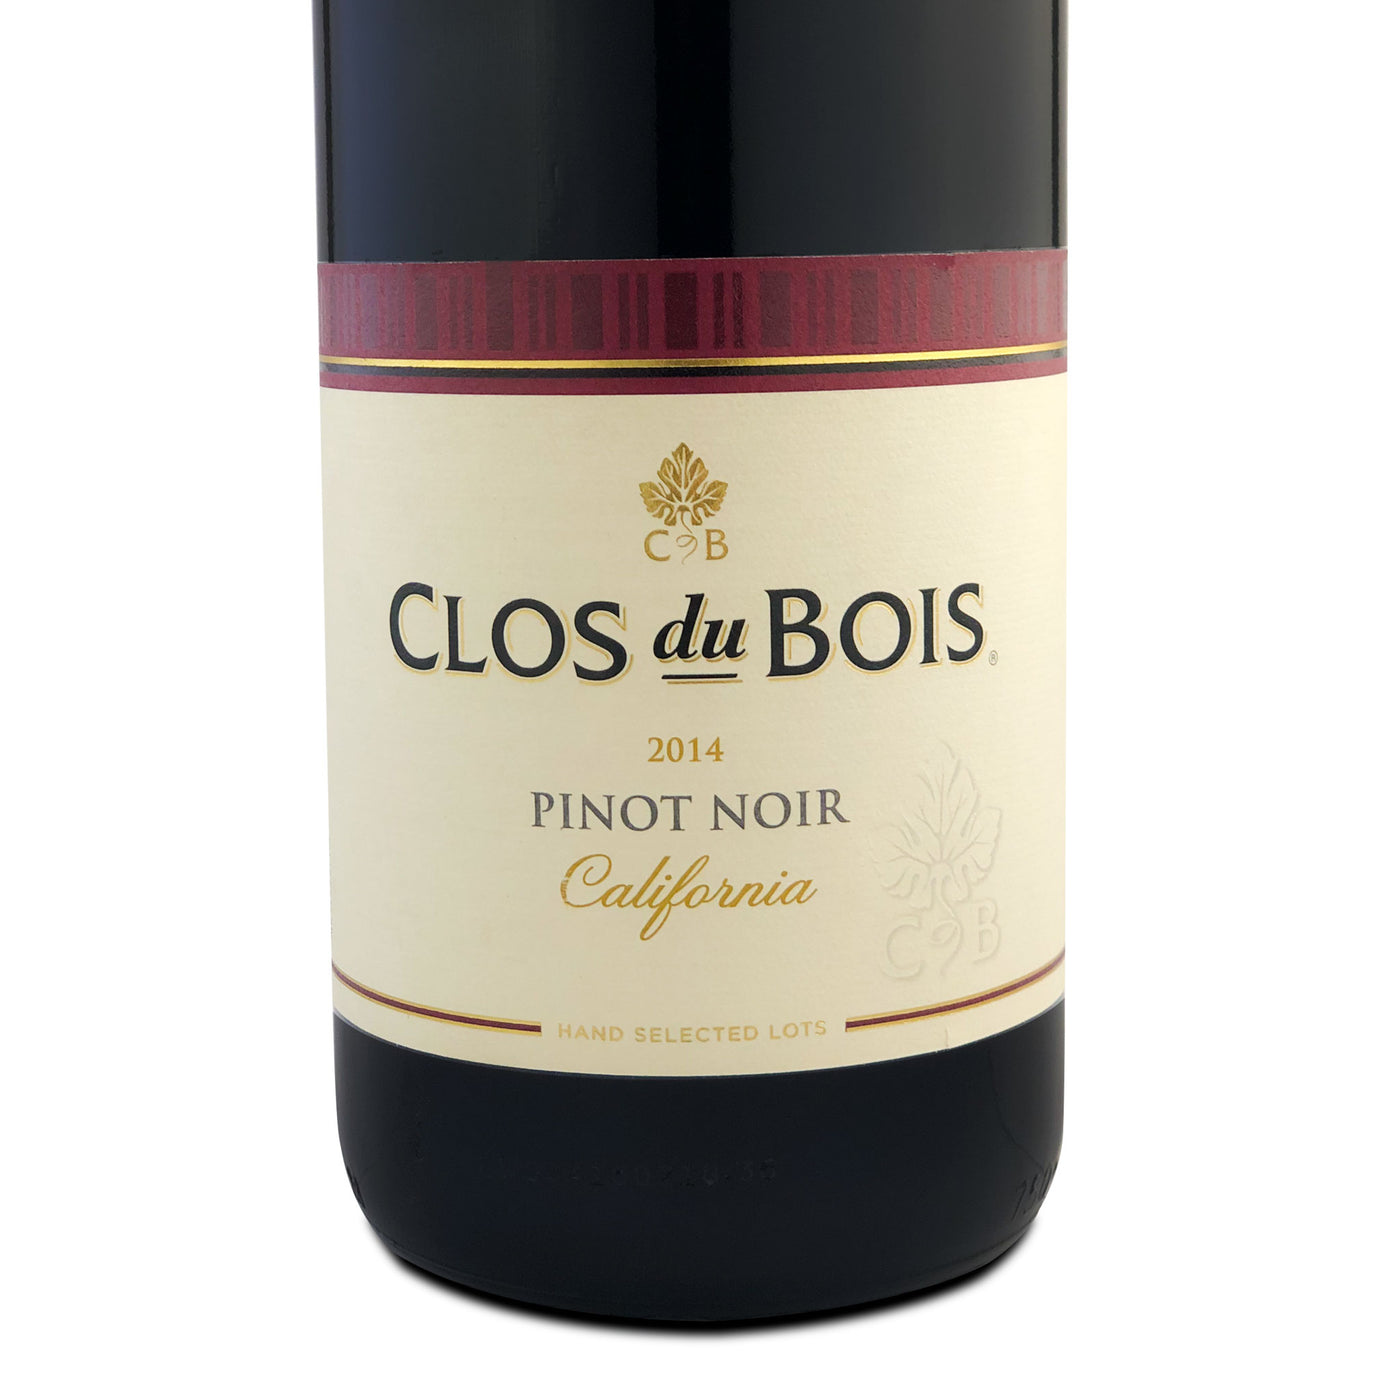 Clos du Bois Pinot Noir 2014